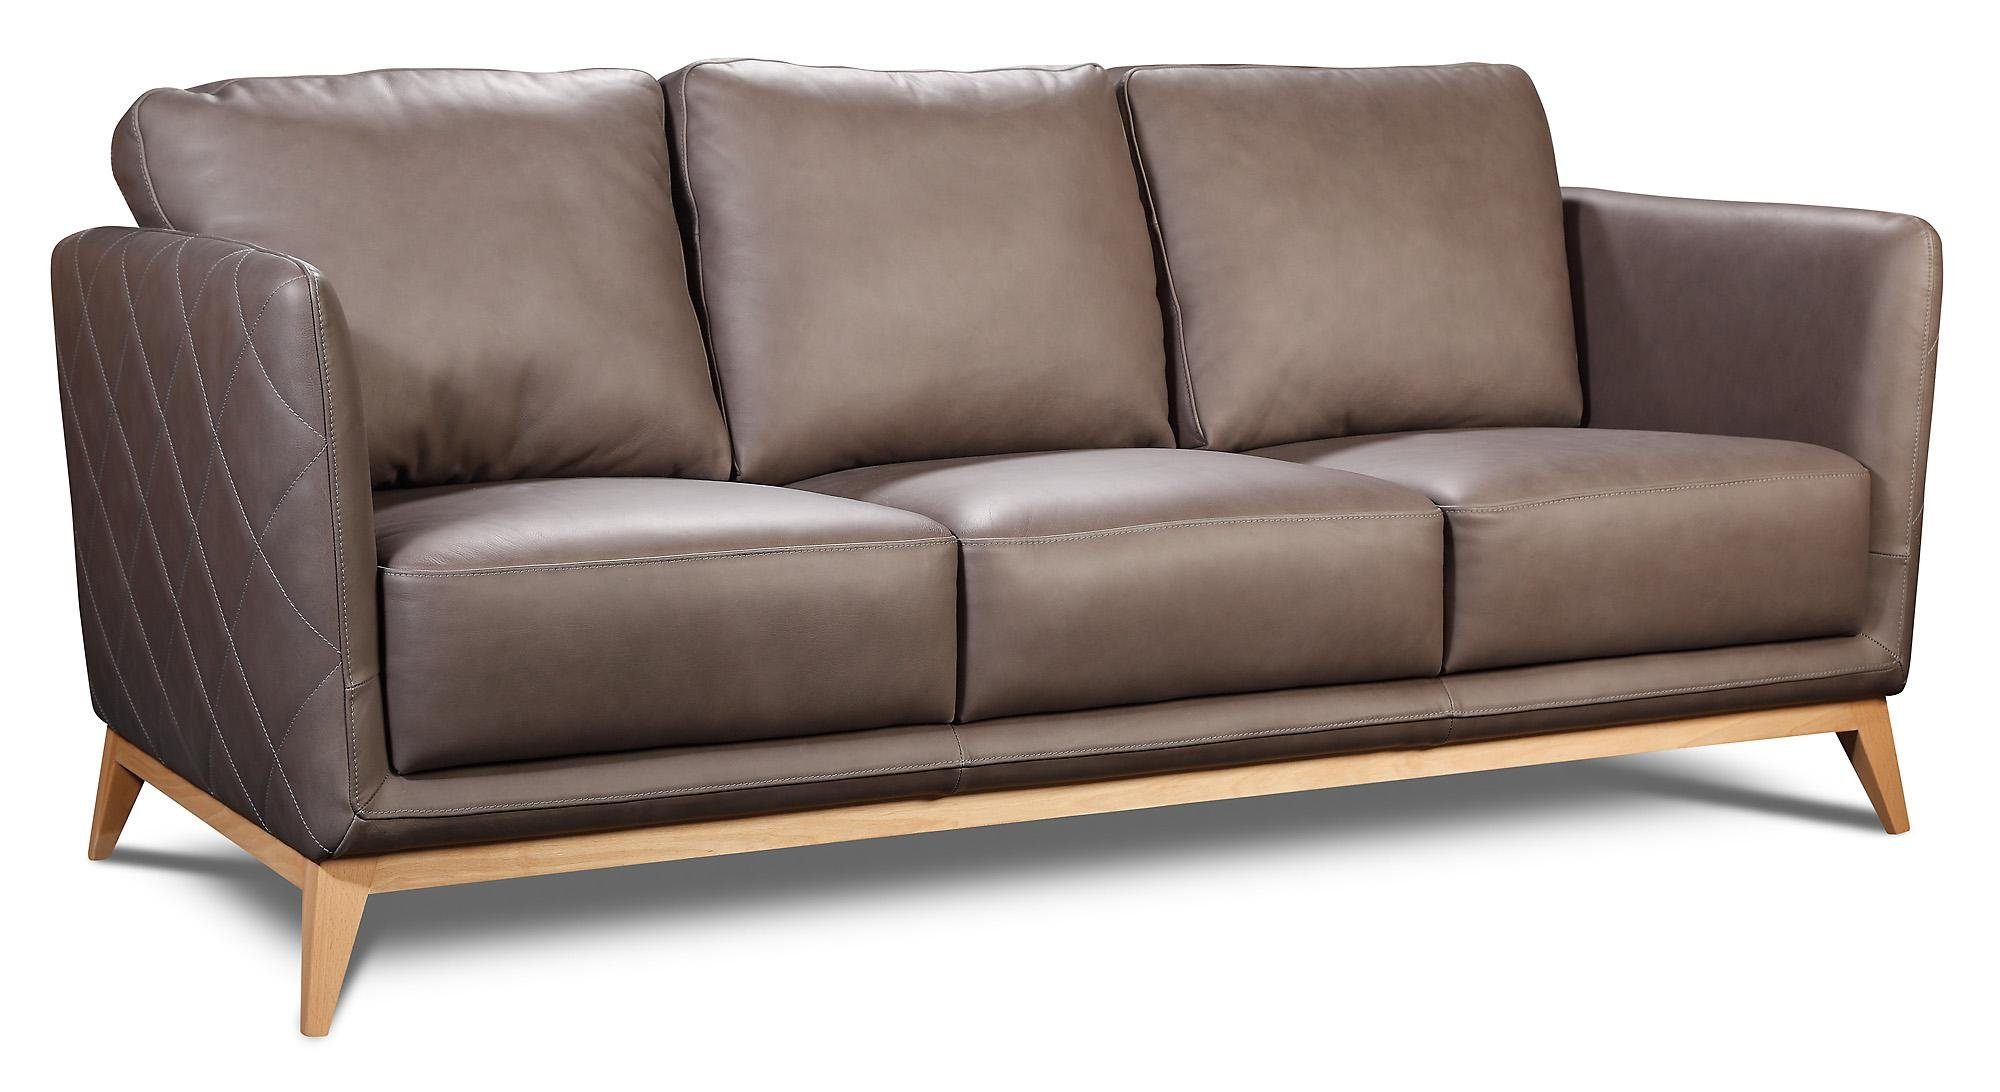 Garnituren Polster Sitz Wohnzimmer-Set, Garnitur Design Couch Leder Sofa 2+1+1 JVmoebel